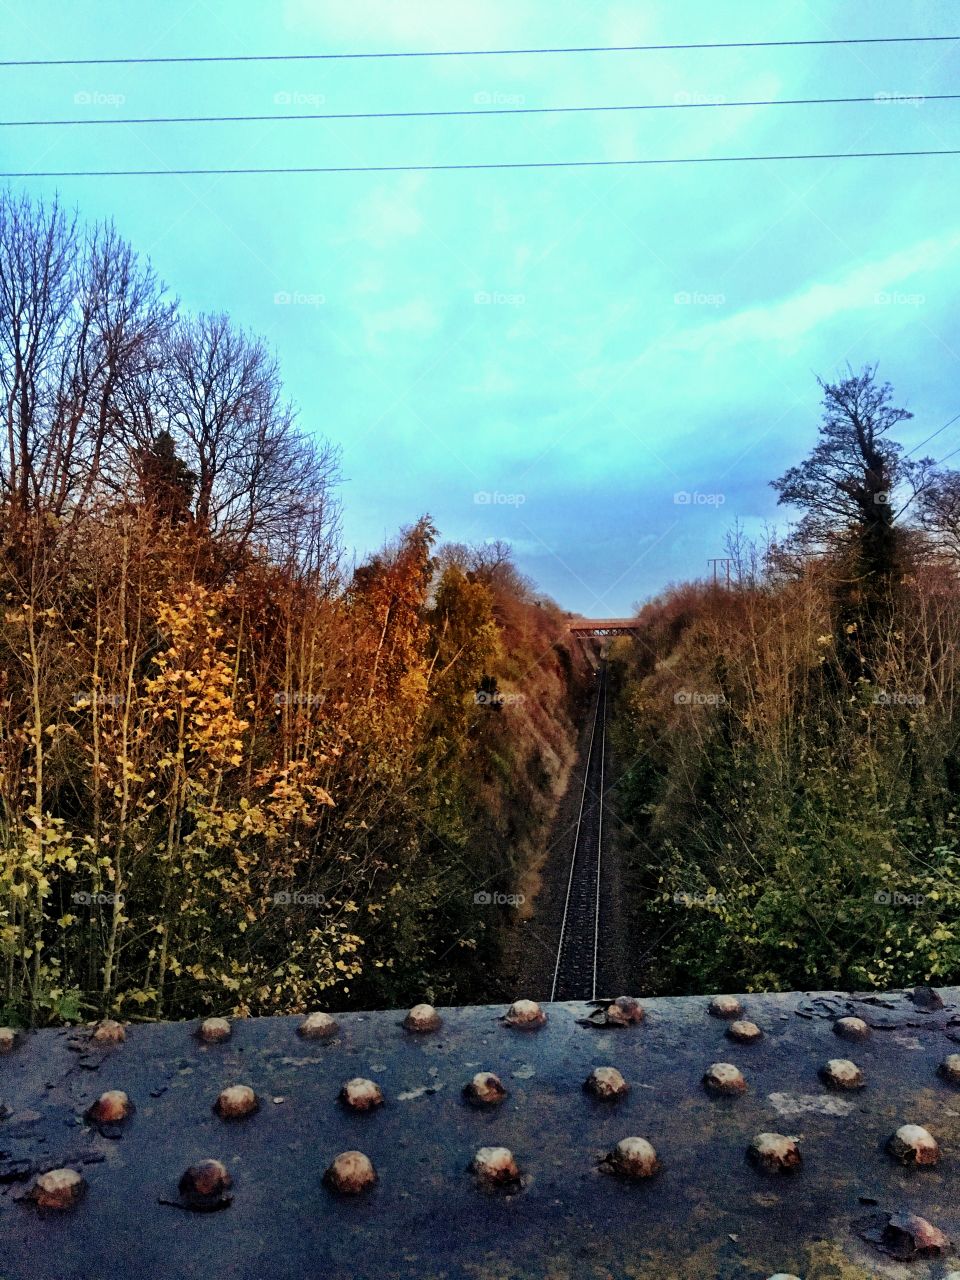 Autumn evening on a railway bridge